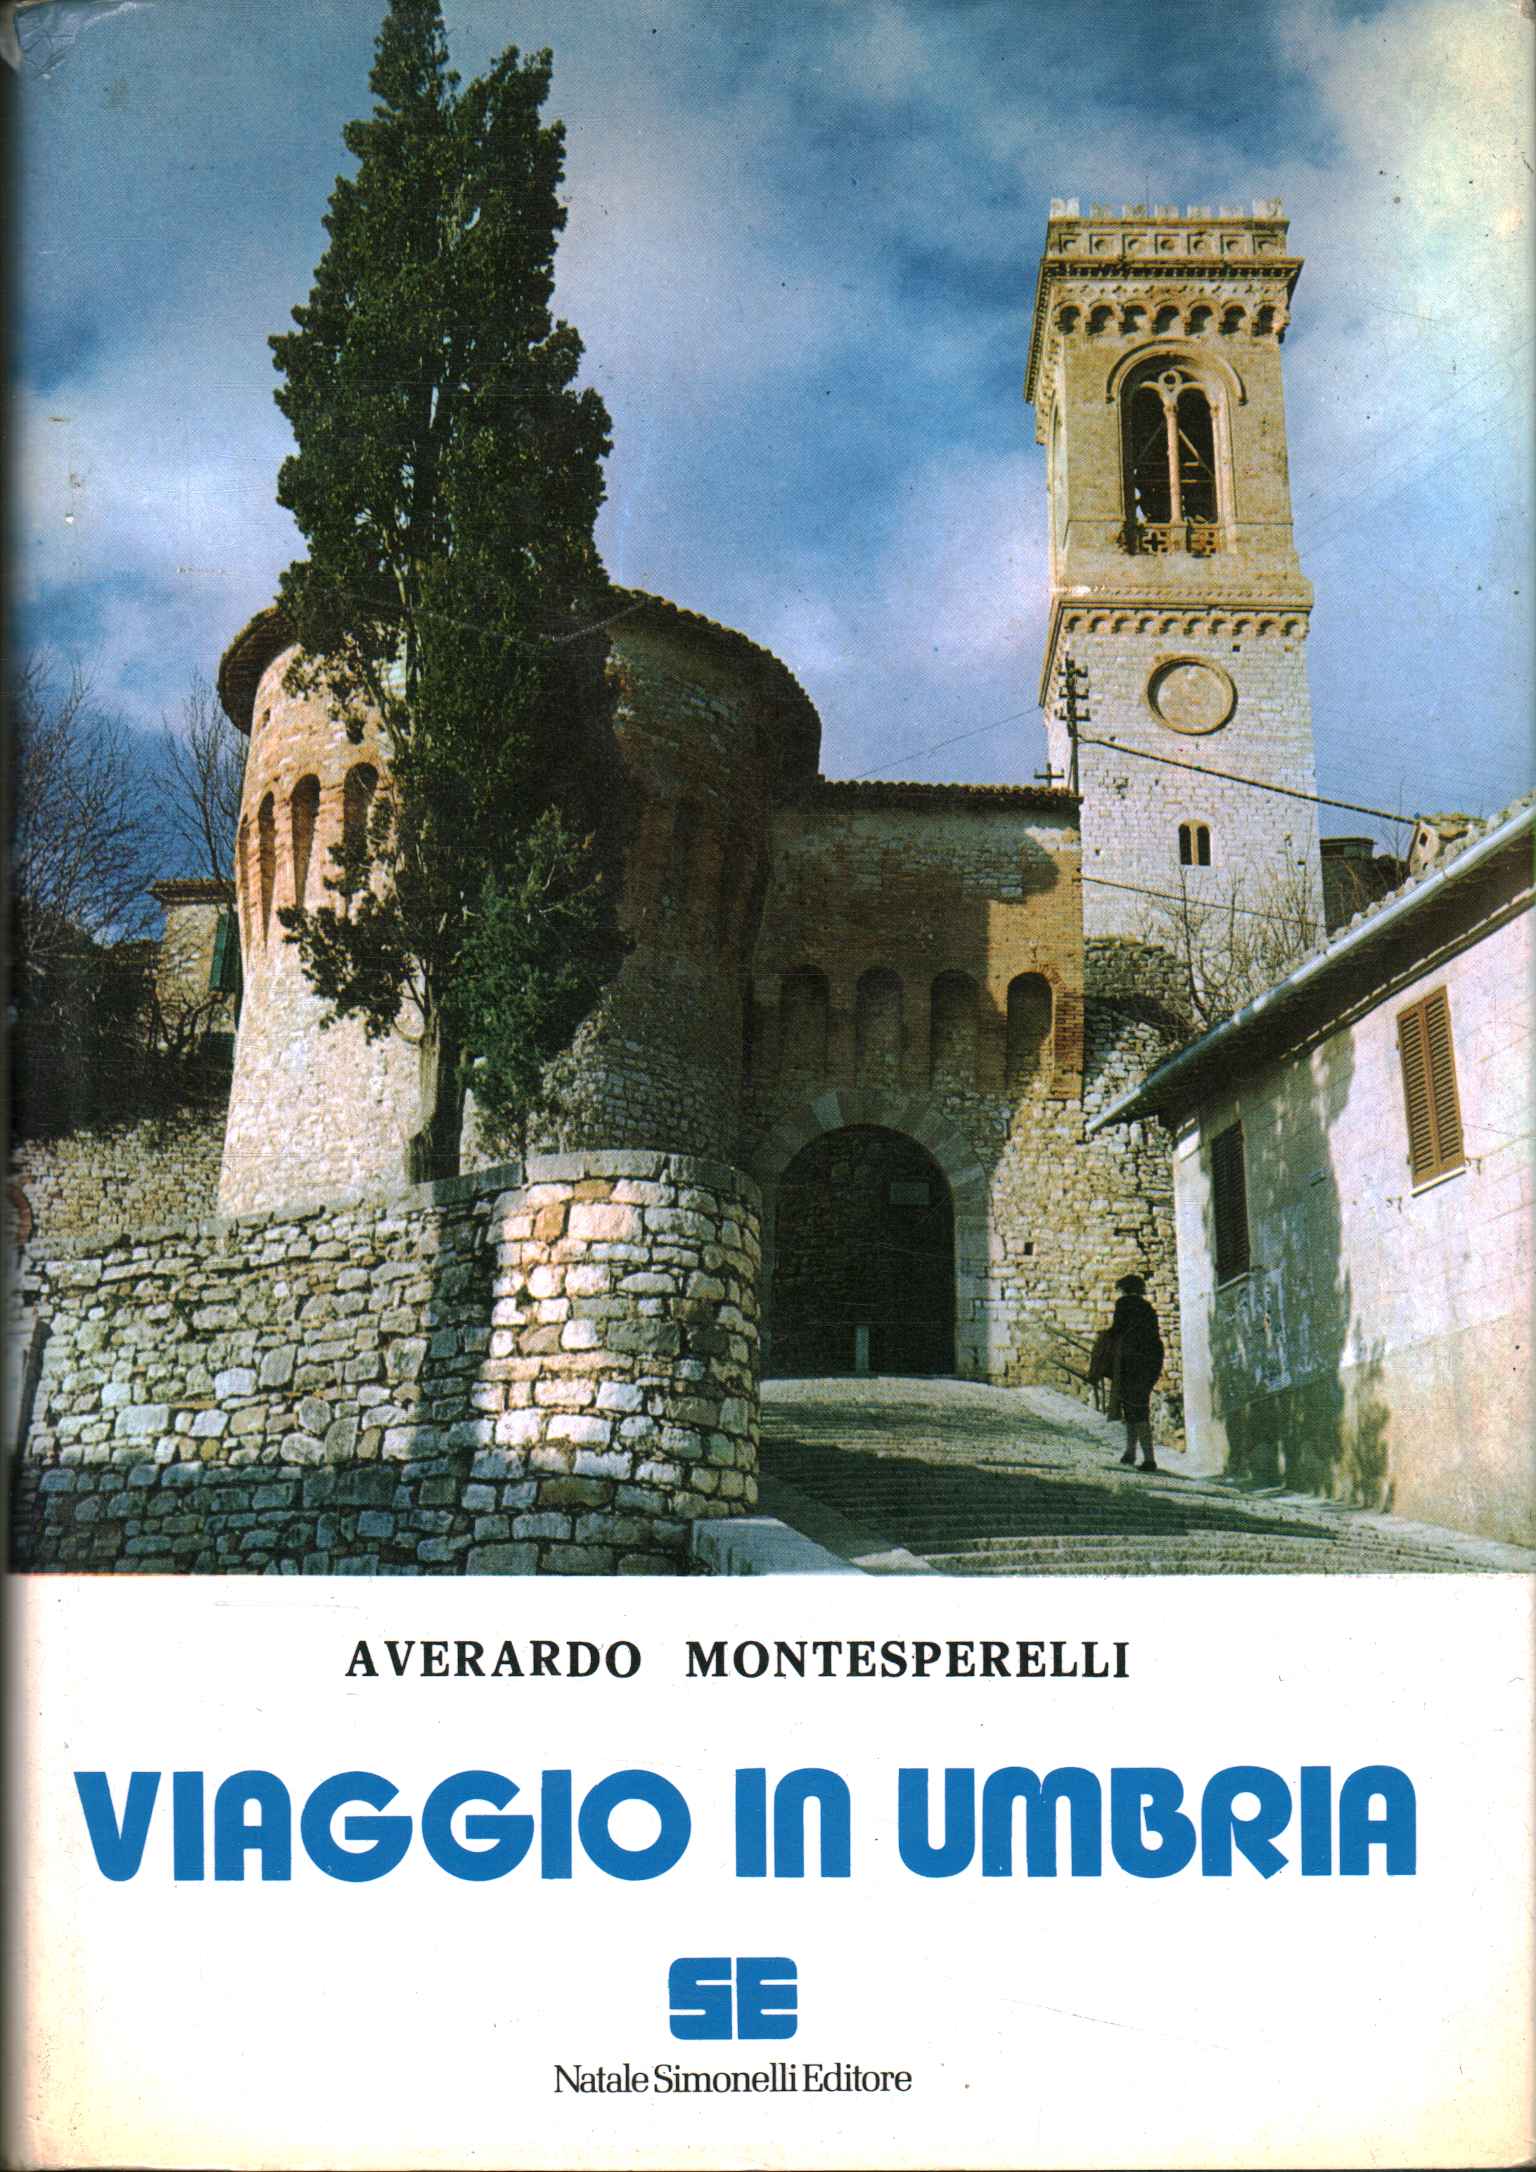 Trip to Umbria